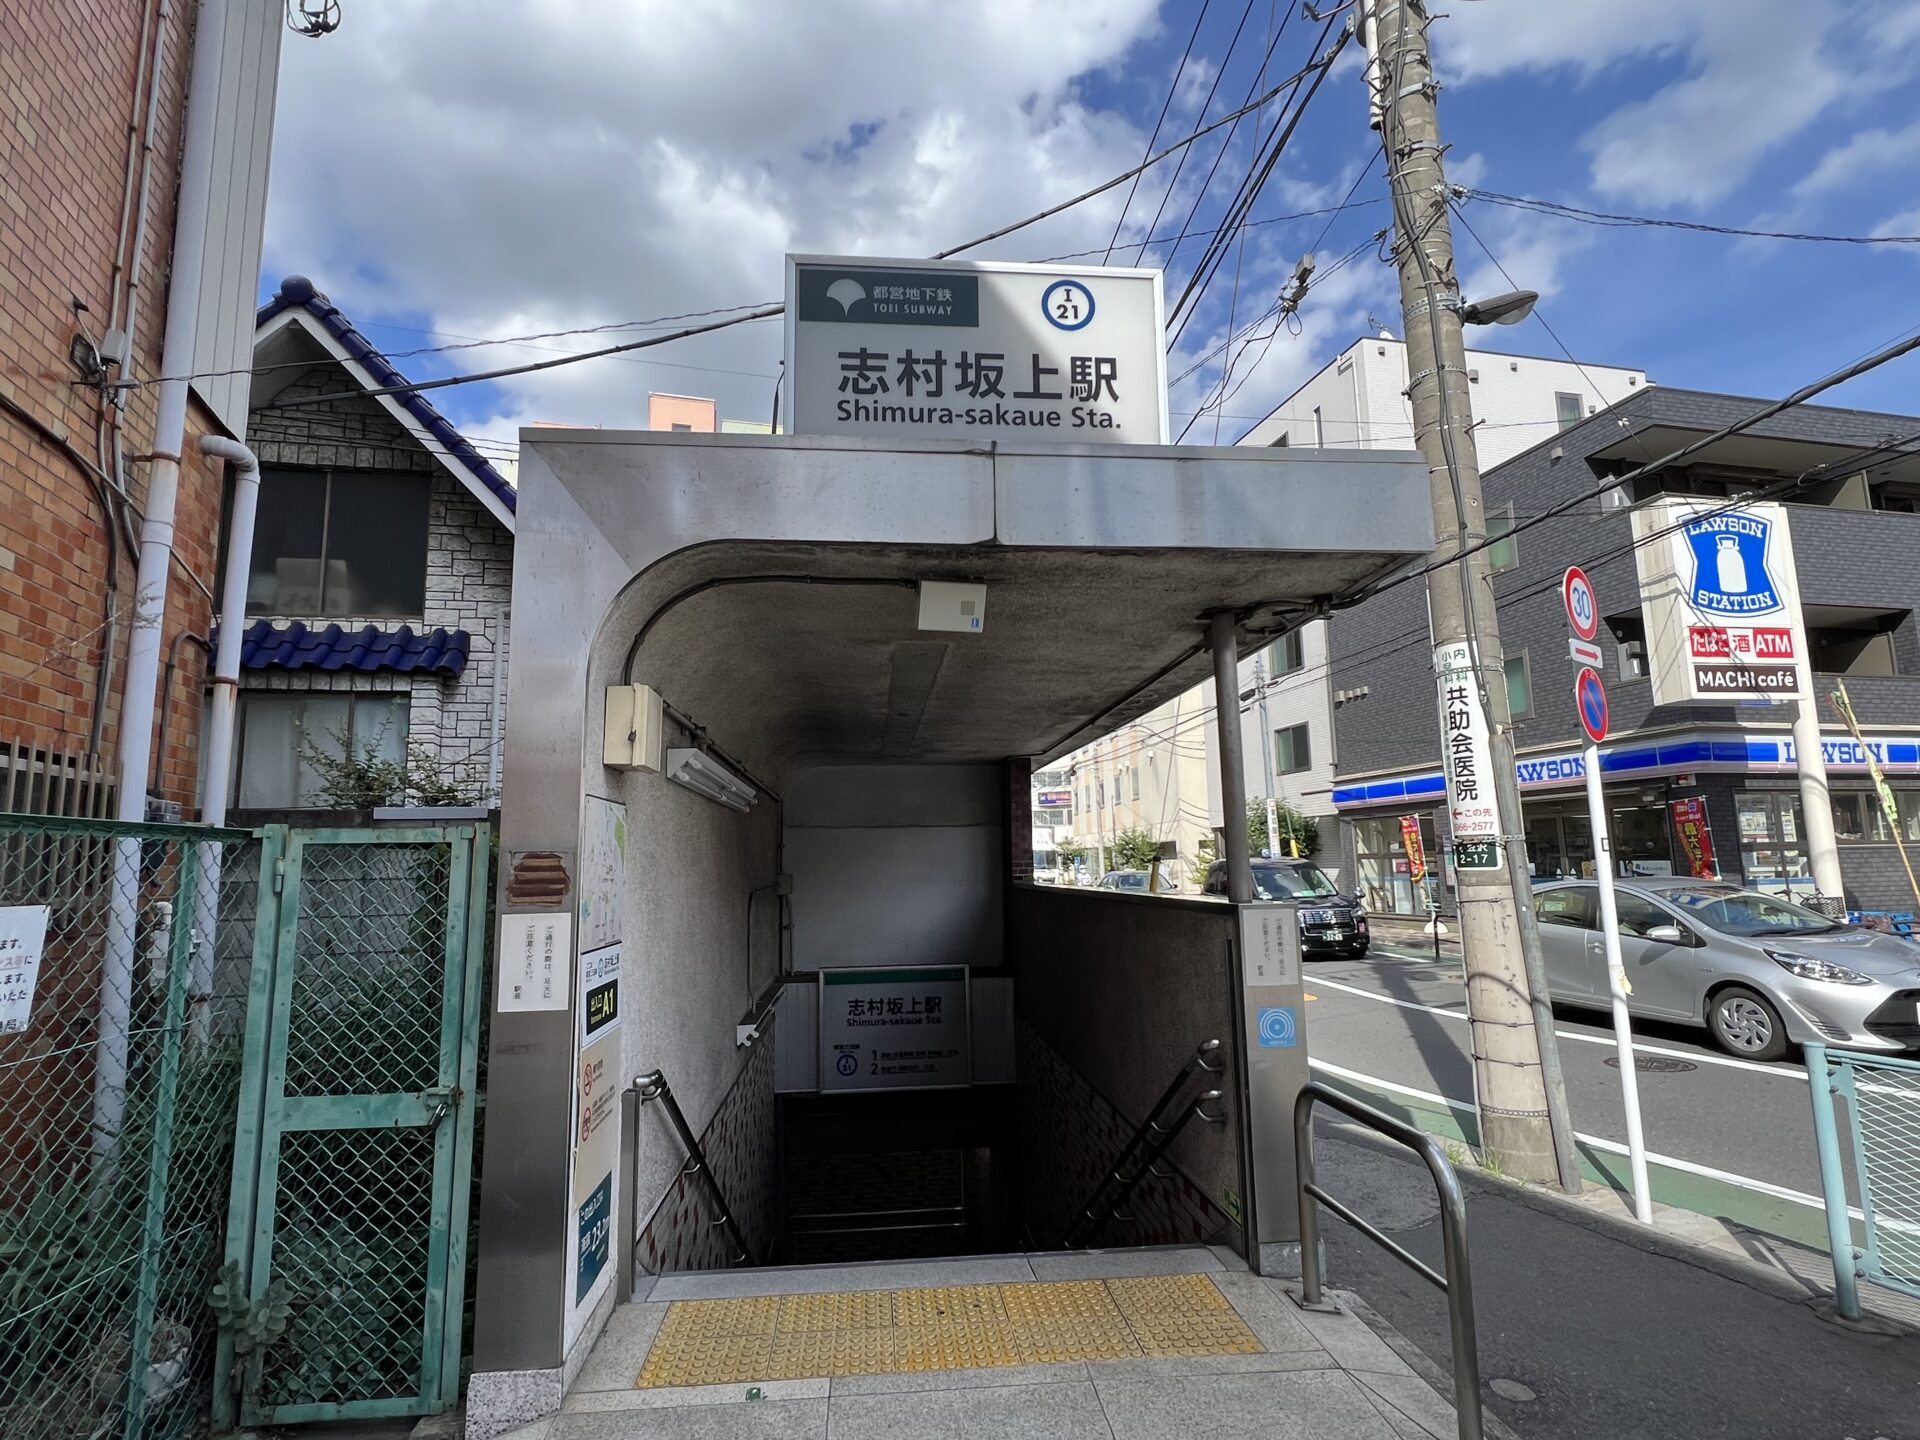  「志村坂上駅A1出口」より出ます。